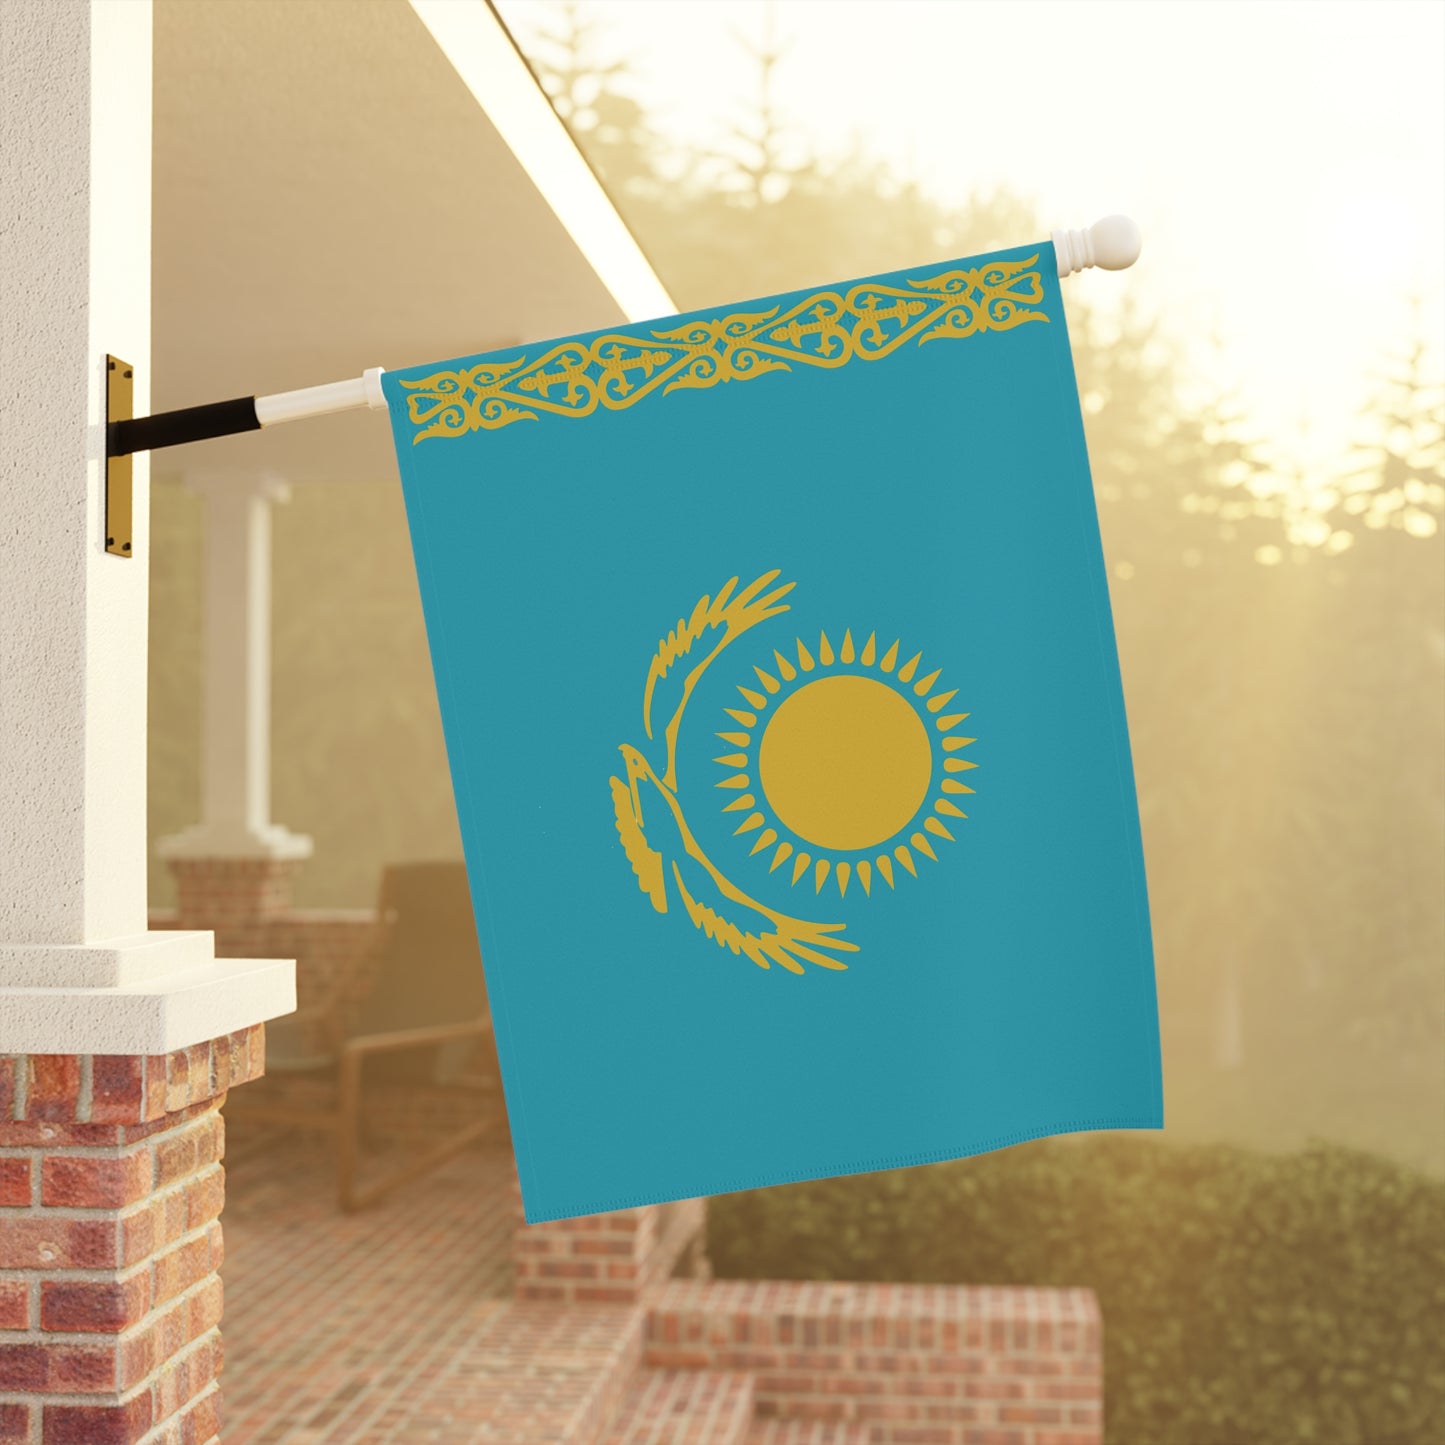 Kazakhstan Flag Garden & House Banner